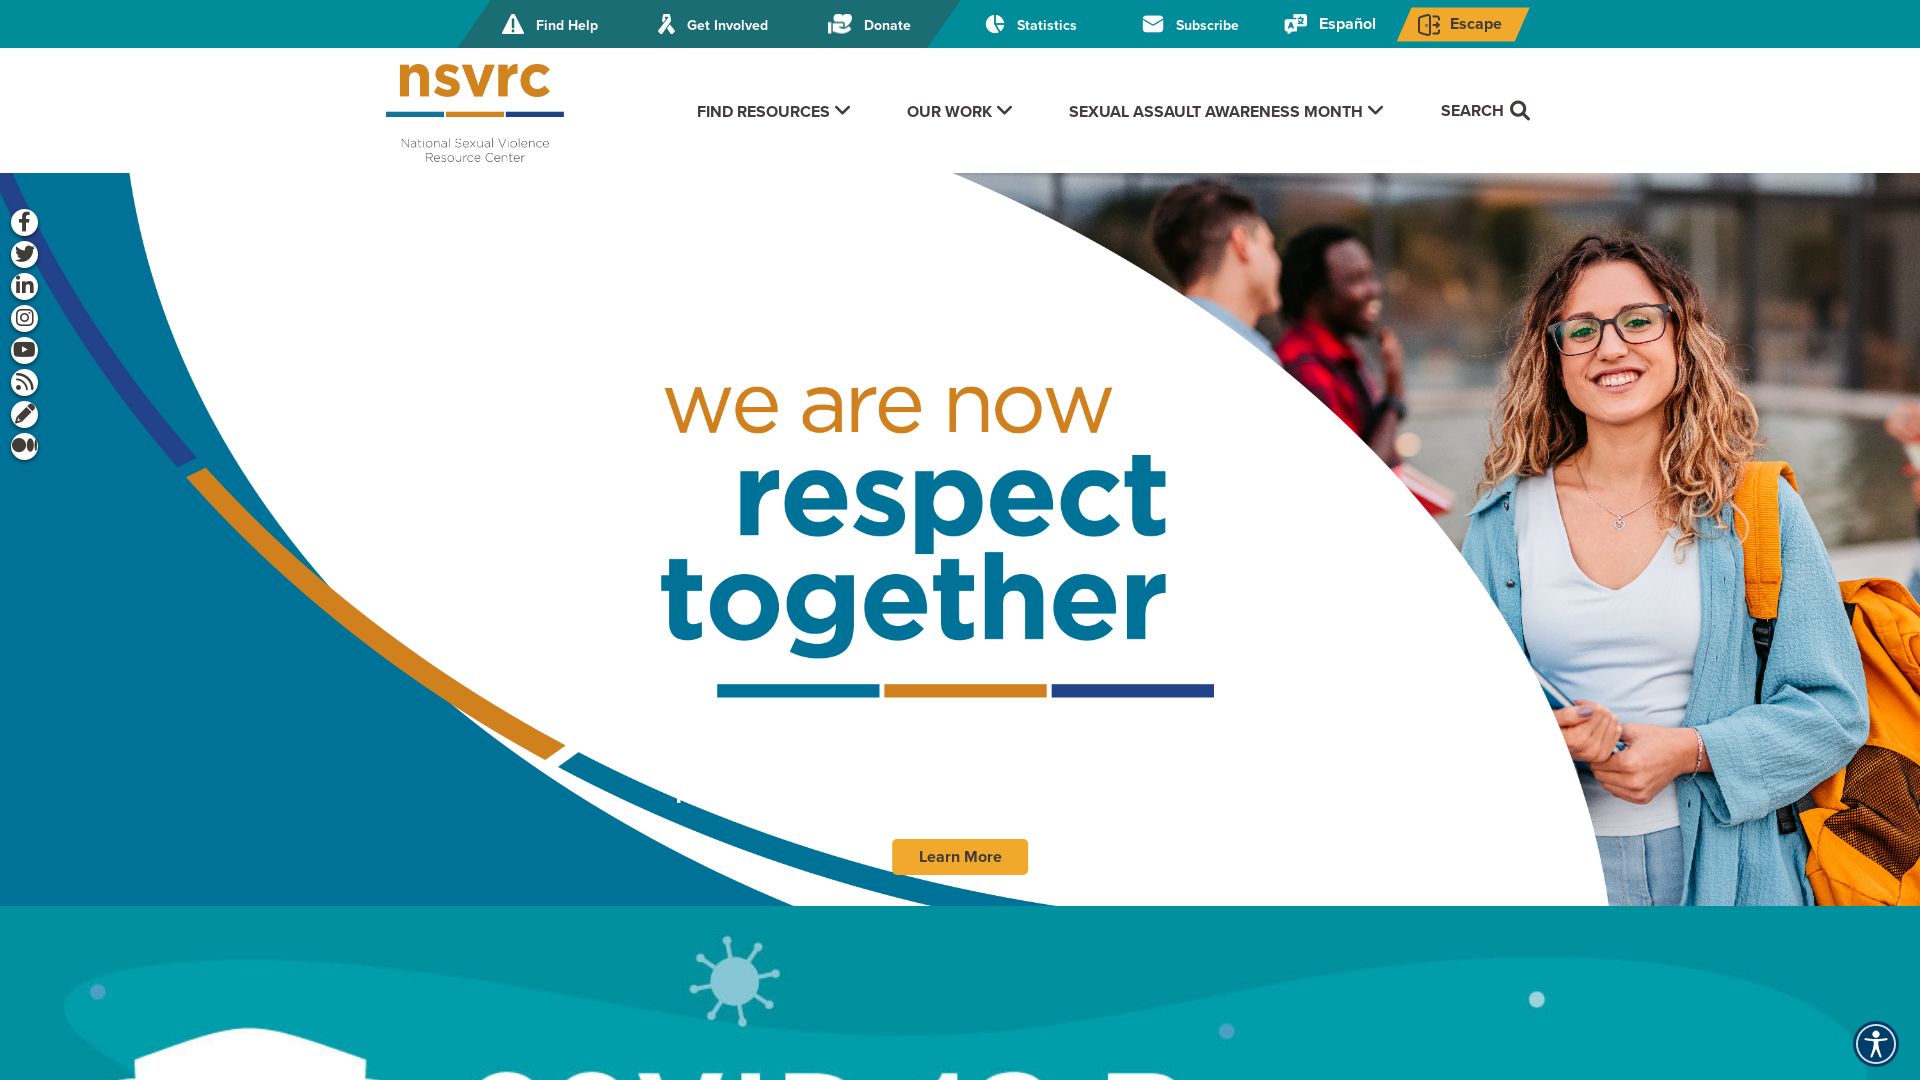 Website status nsvrc.org is   ONLINE